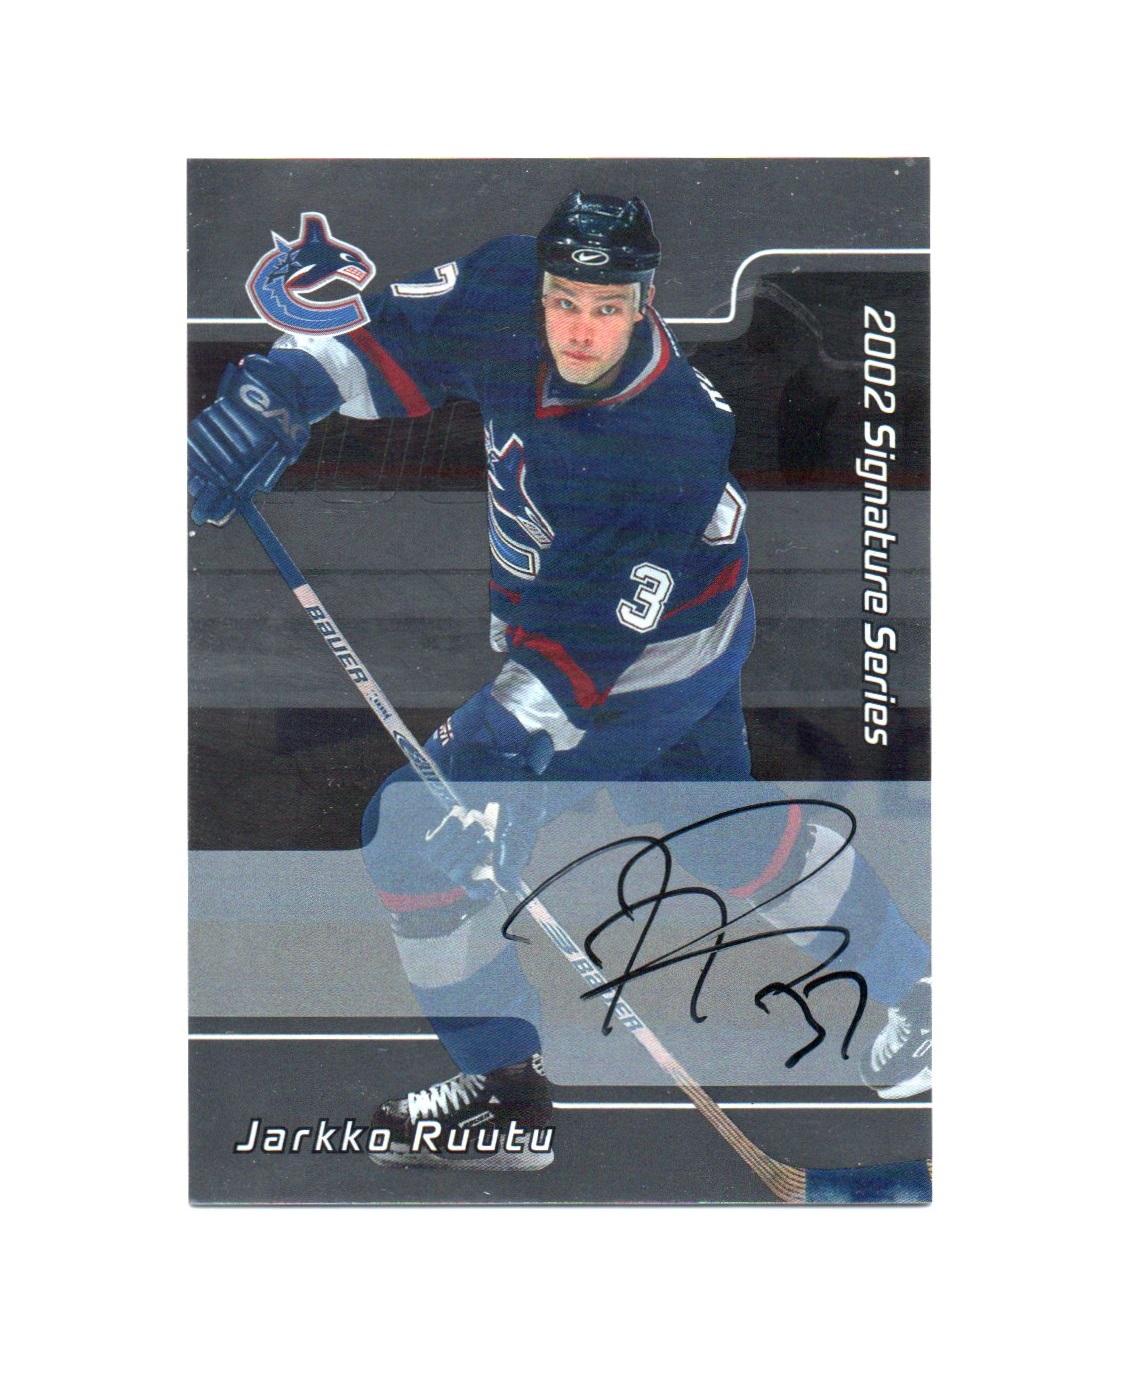 2001-02 BAP Signature Series Autographs #97 Jarkko Ruutu (30-X273-CANUCKS)